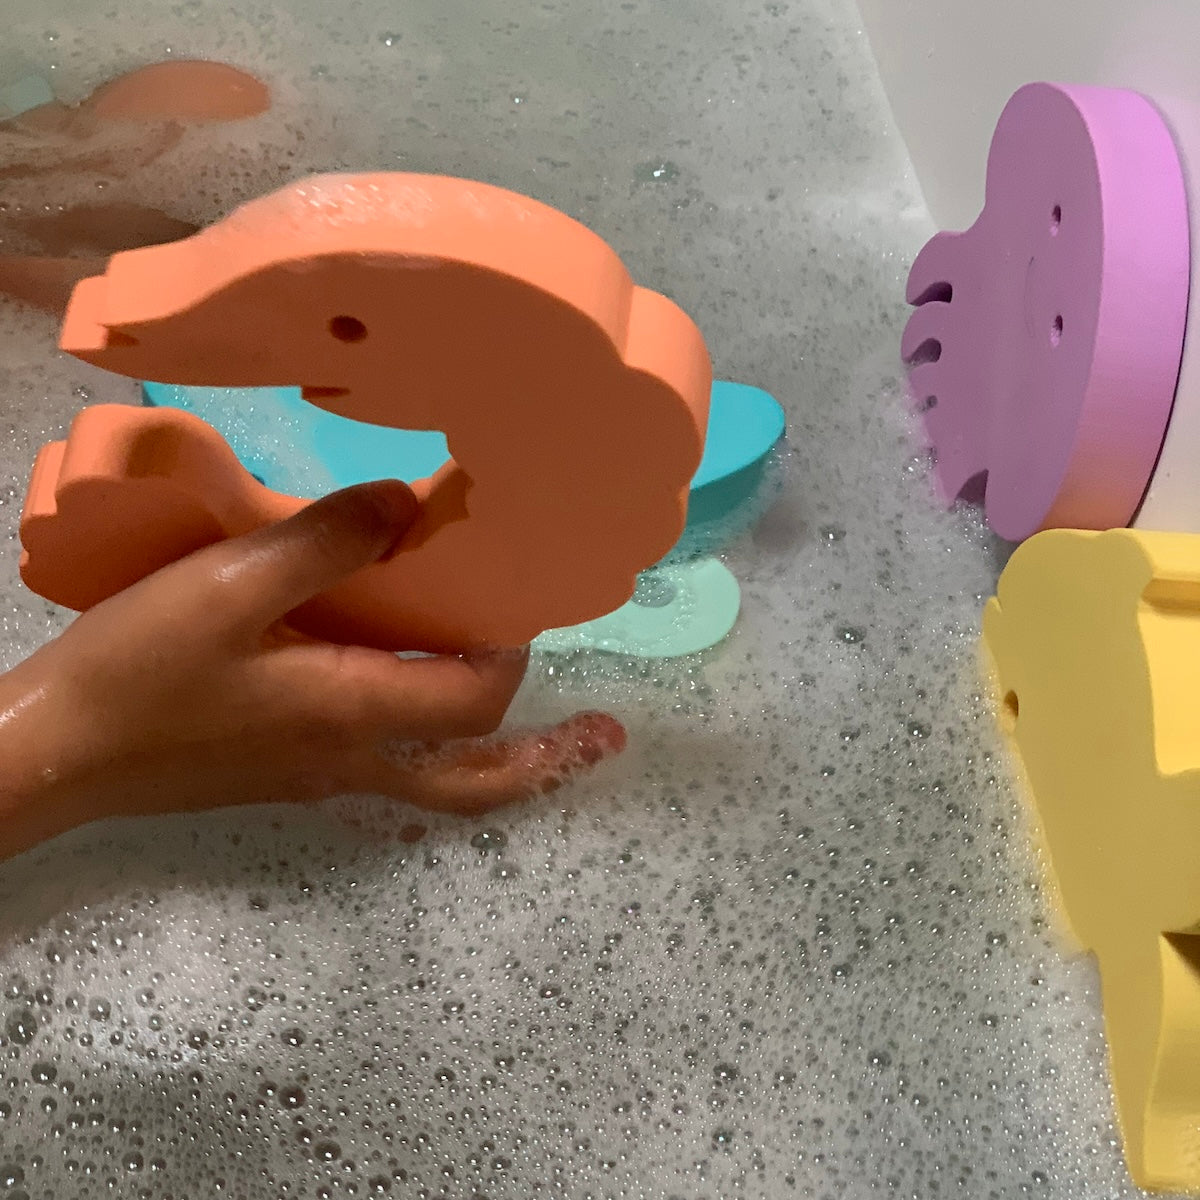 Met deze leuke Waterfun set 2 van het merk Moes Play kan je kindje keer op keer fantastische wateravonturen beleven. De set bestaat uit 6 herkenbare dieren uit de onderwaterwereld en zijn geschikt voor in bad, onder de douche, in de zee en in het zwembad. VanZus